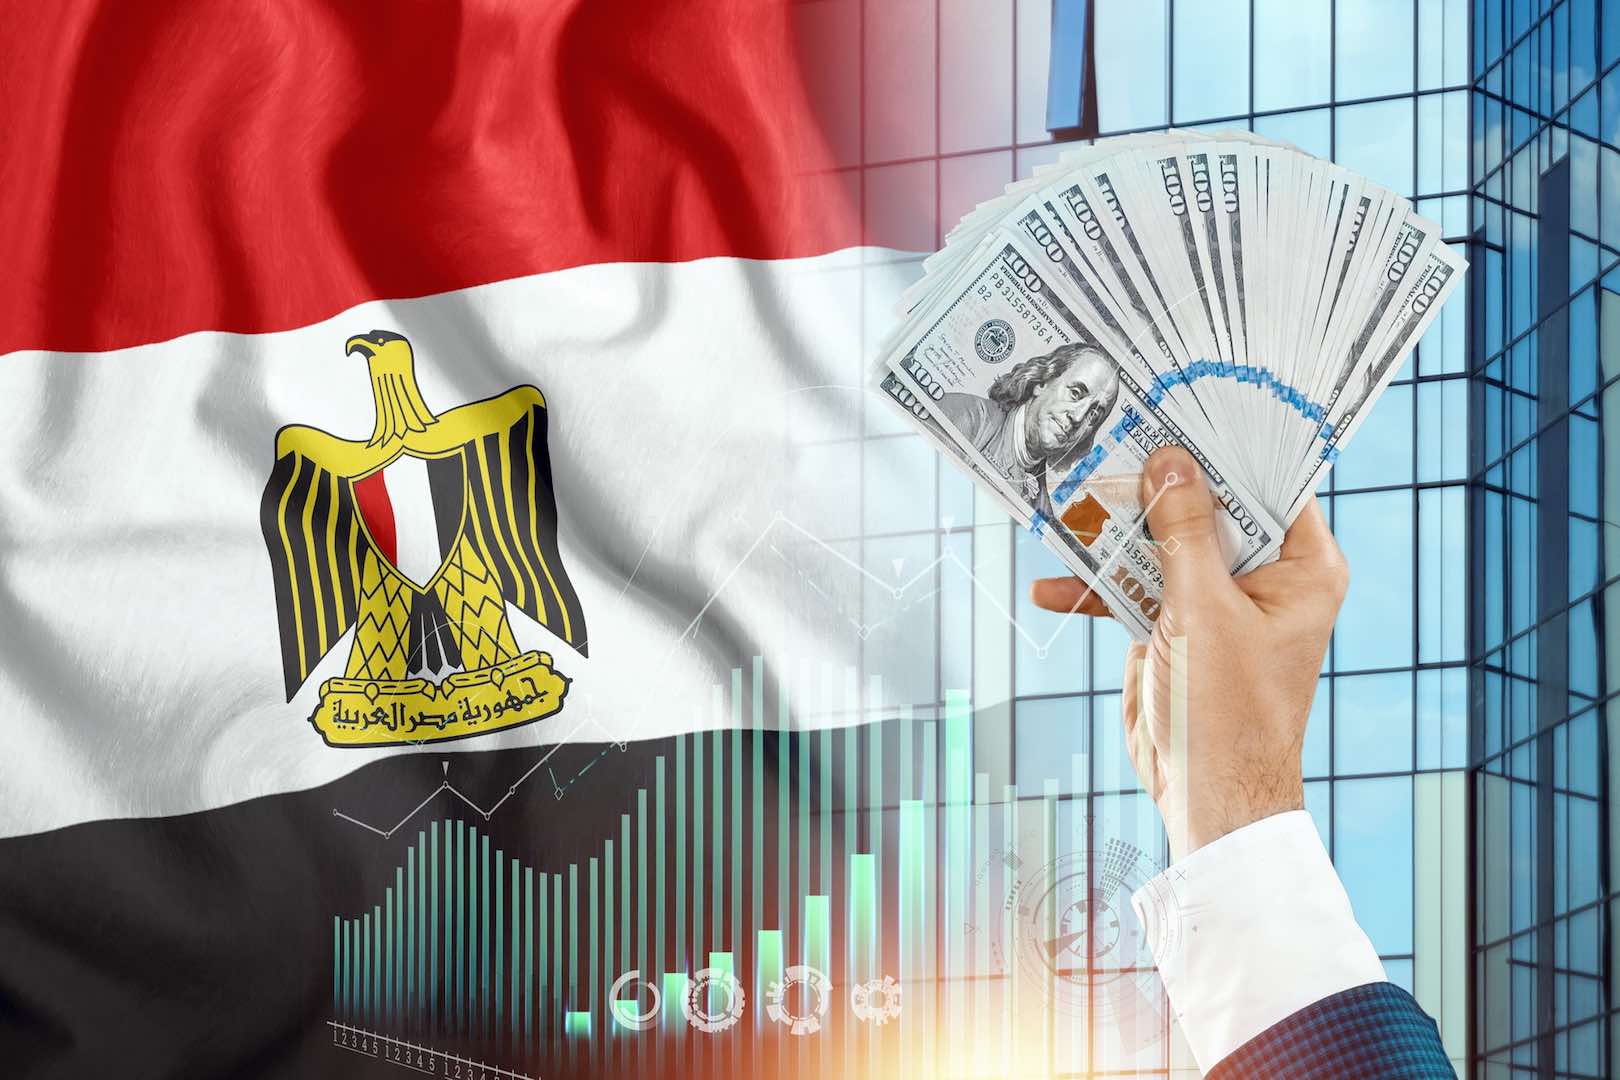 وزارة التخطيط المصرية تبرز الشركات التي تمكنت الحكومة من بيع أسهمها بنجاح